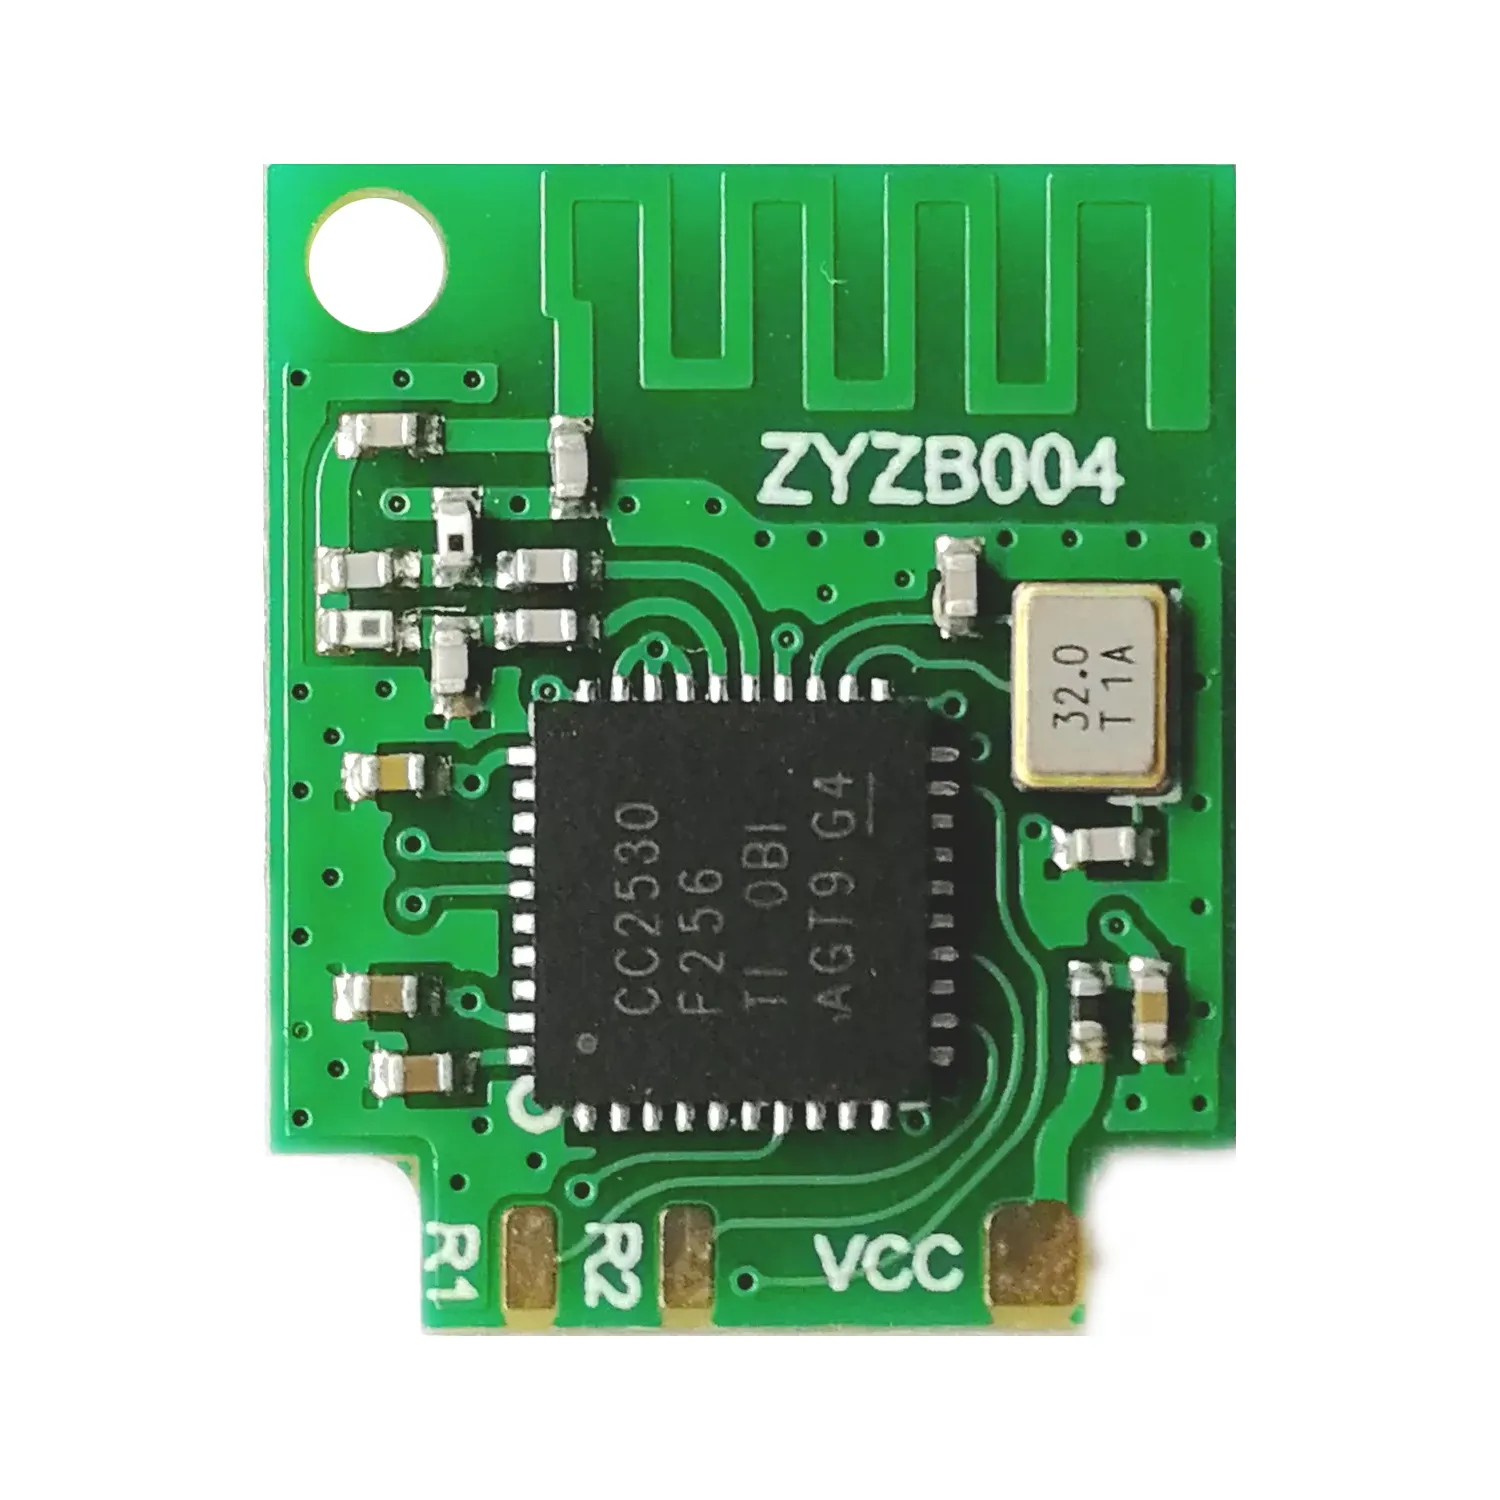 eWeLink ZigBee CC2530 Power Outlet Module